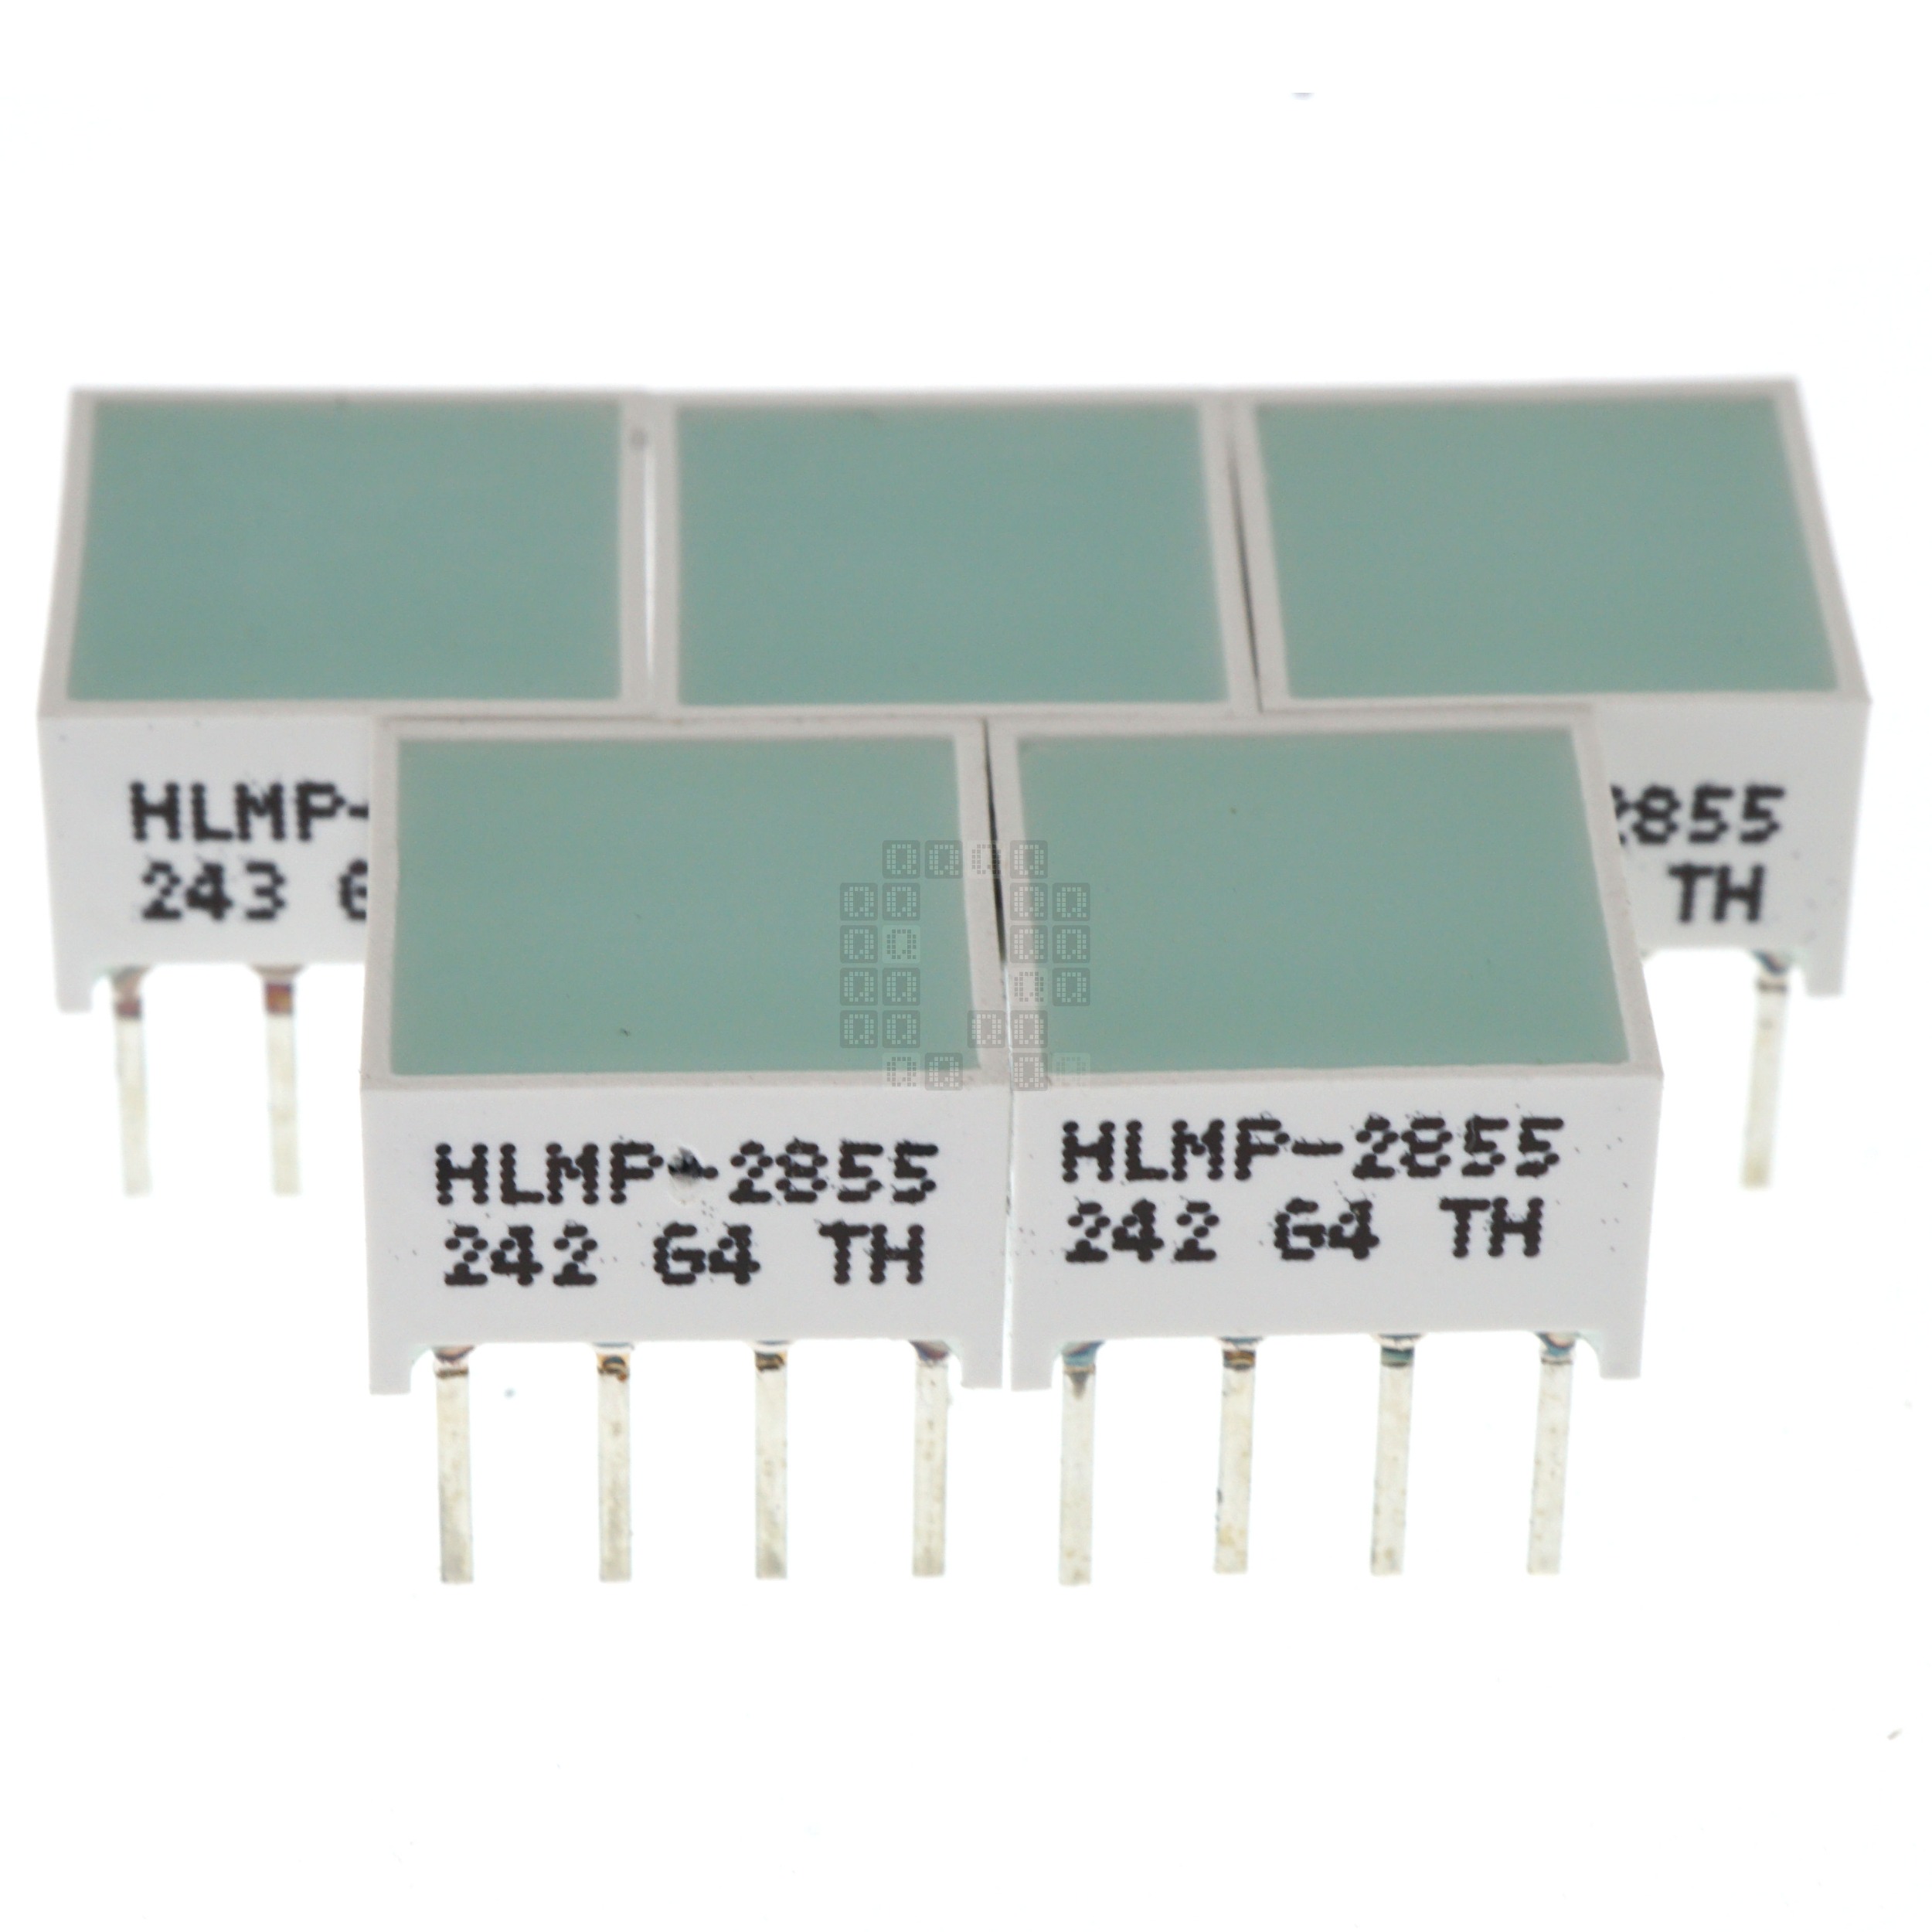 Broadcom / Avago HLMP-2855 LED 4-Segment Light Bargraph, 565nm Green 50mcd, 5-Pack